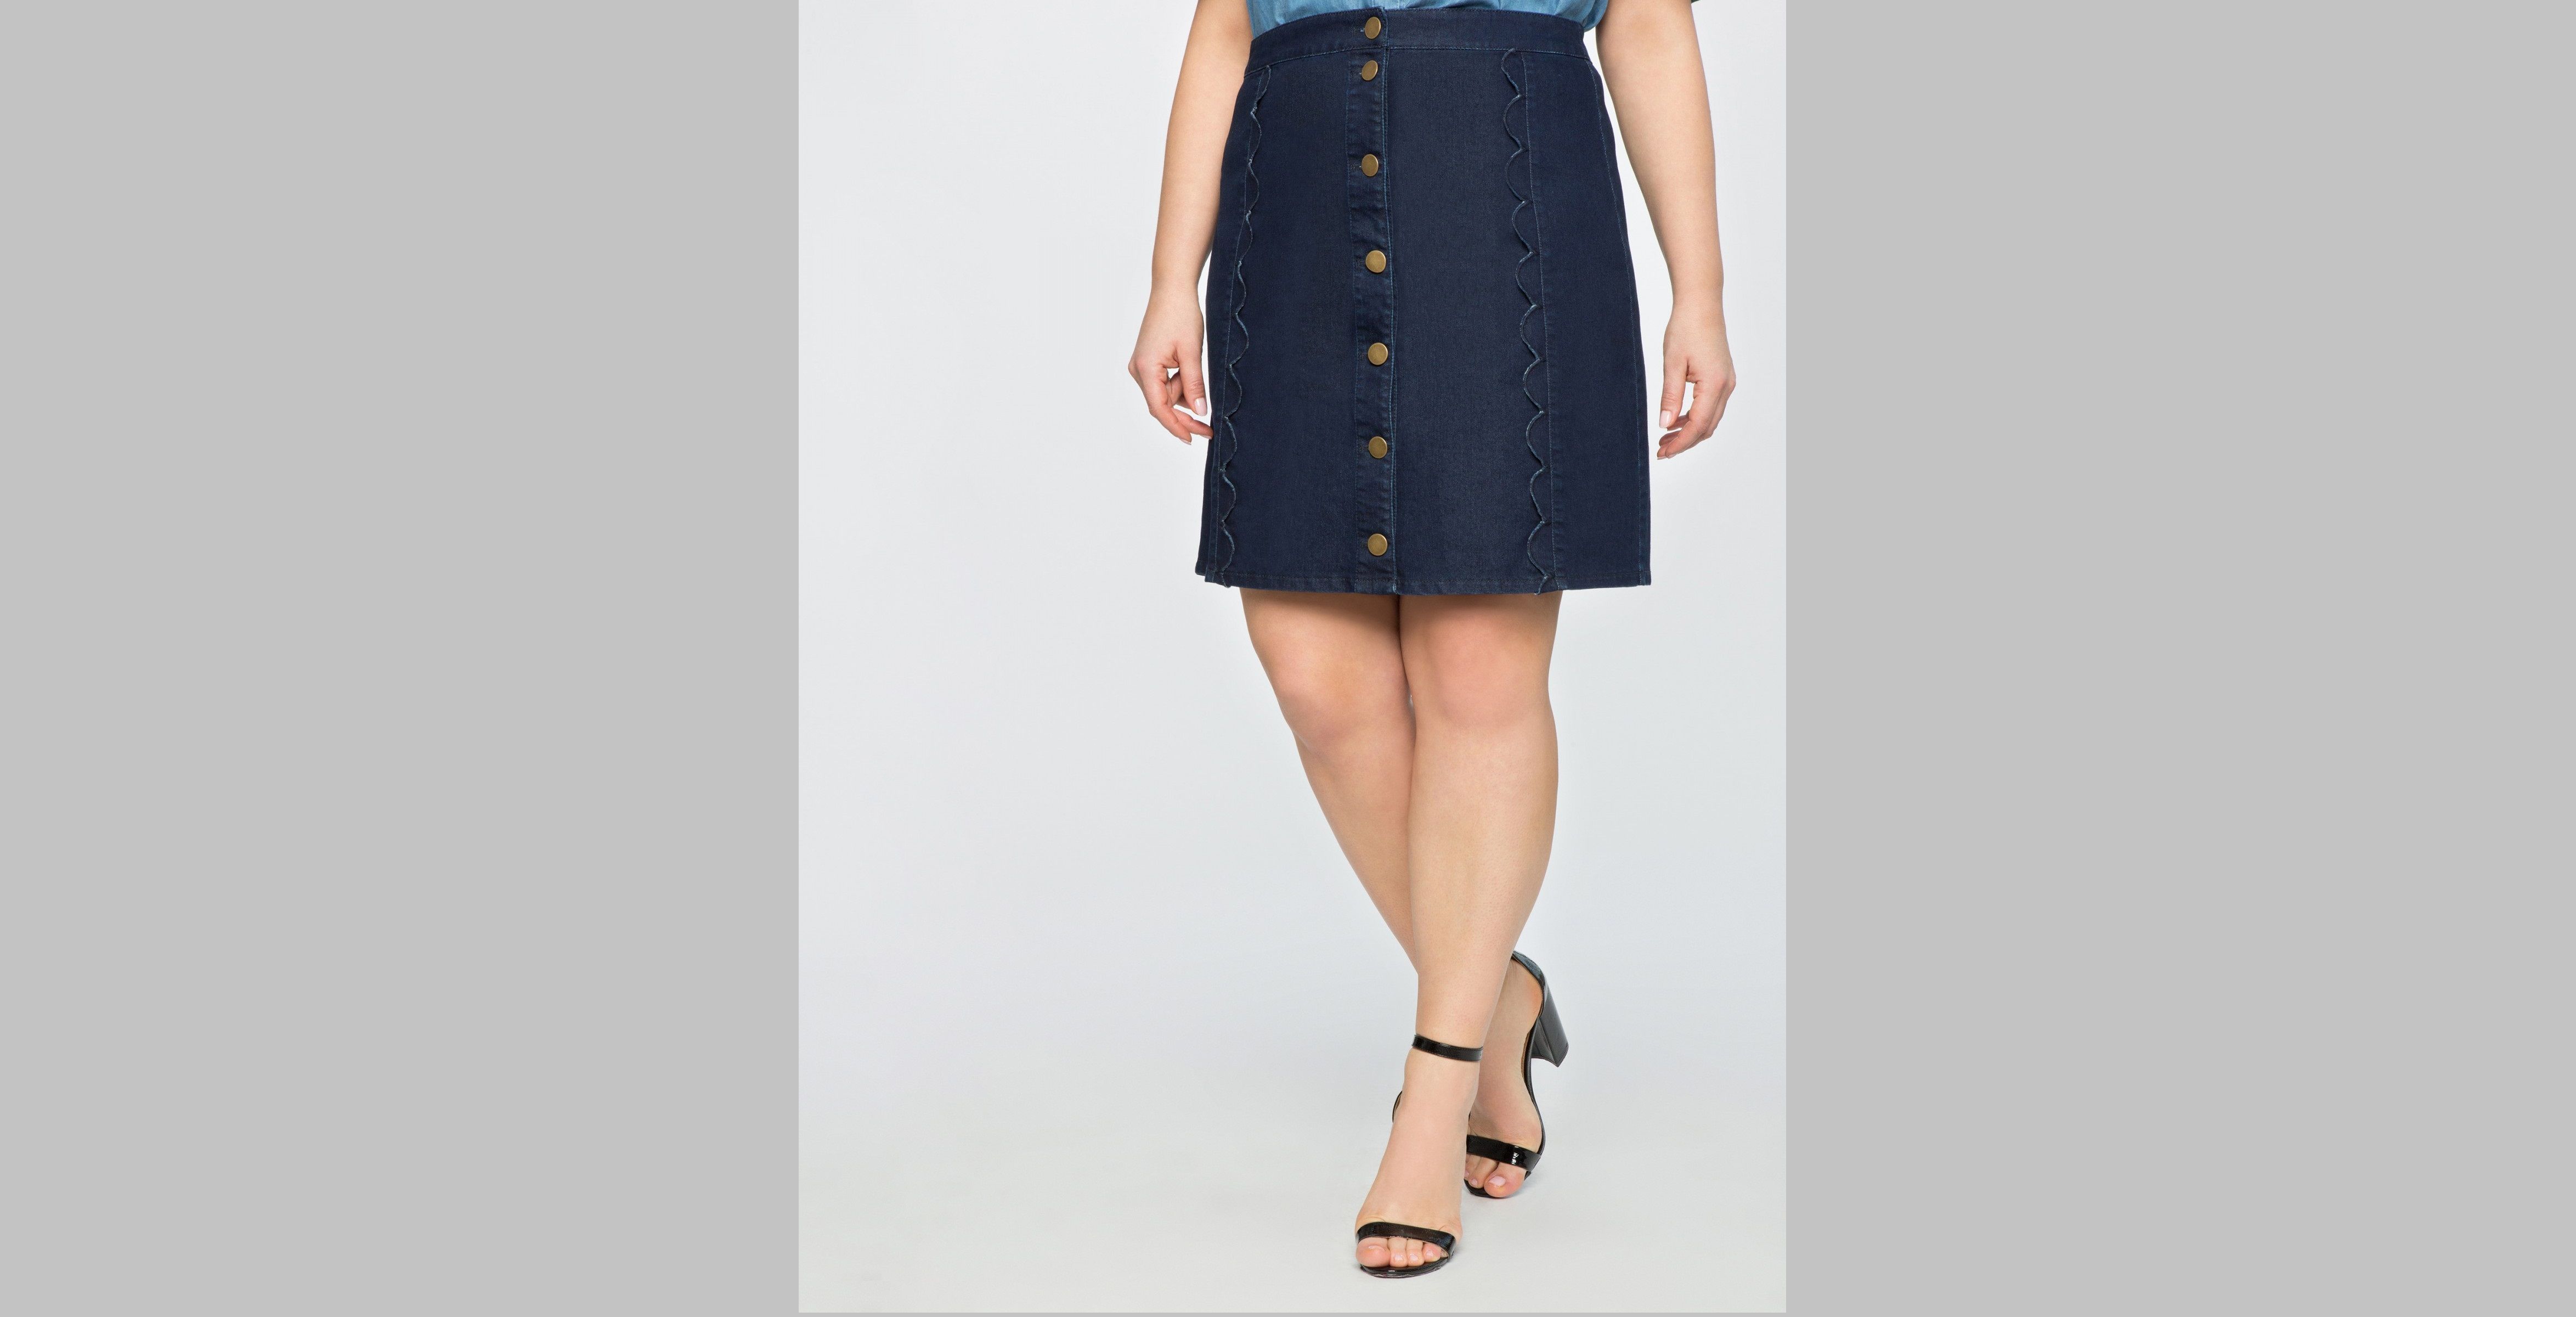 3. Scallop A-Line Skirt